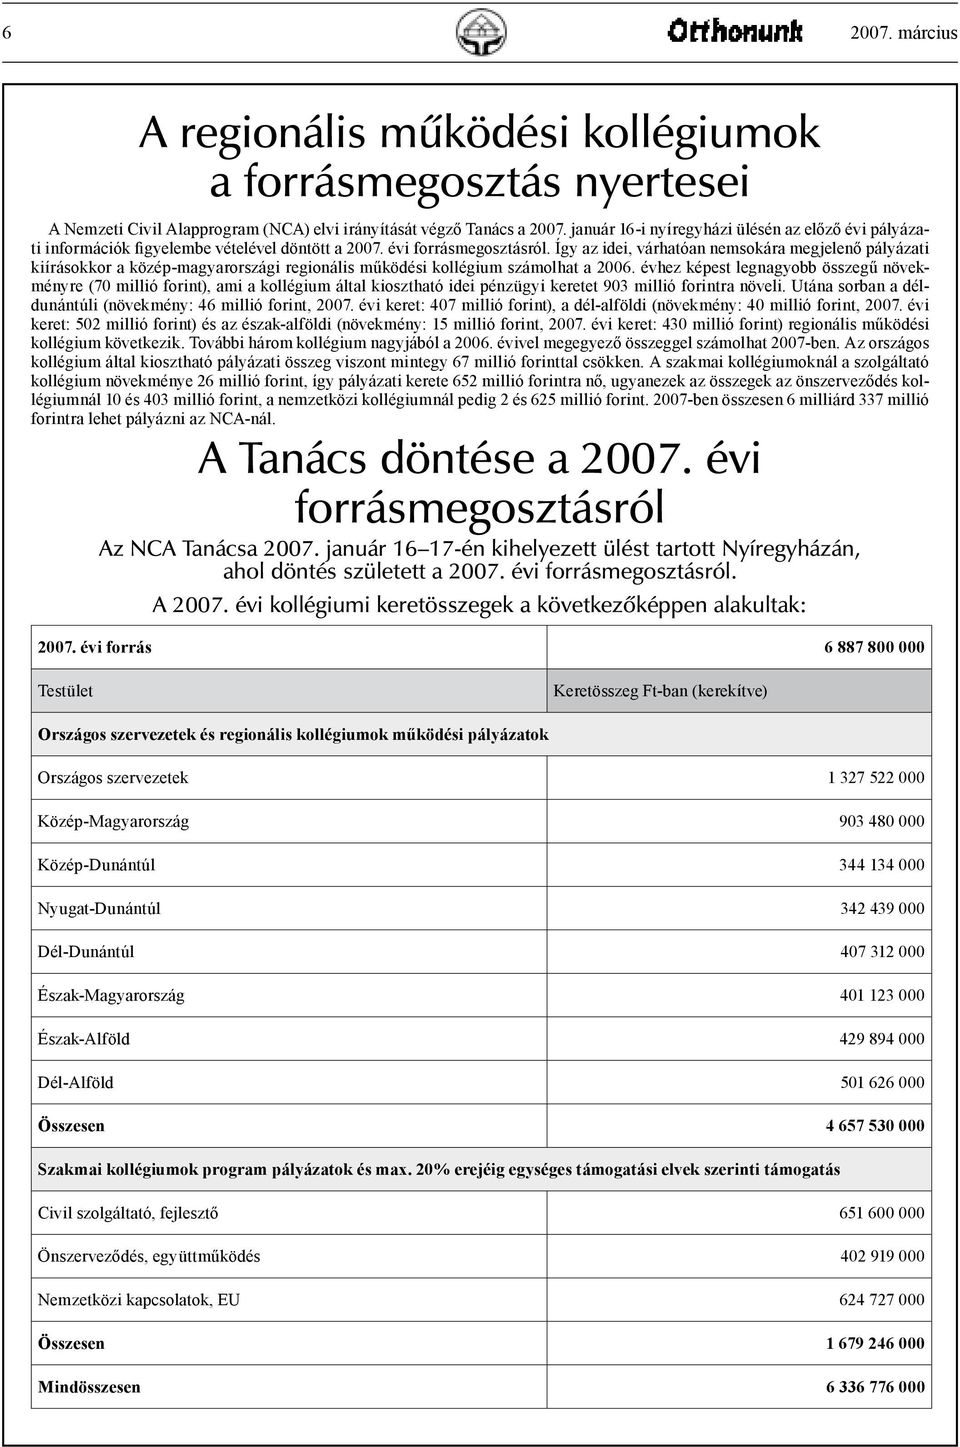 Így az idei, várhatóan nemsokára megjelenő pályázati kiírásokkor a közép-magyarországi regionális működési kollégium számolhat a 2006.